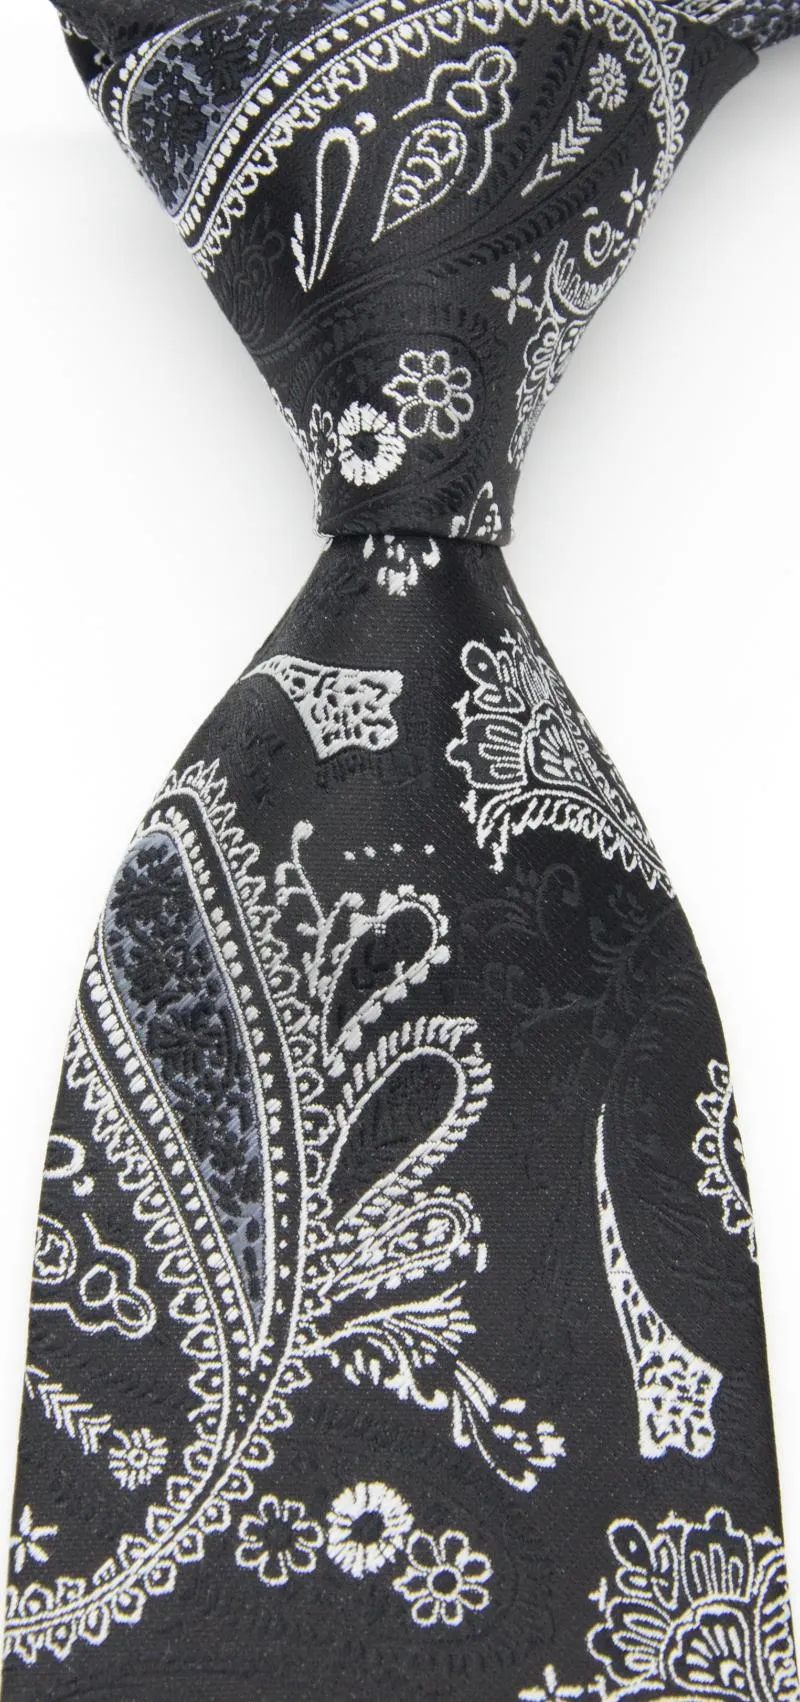 Bow Ties Silk kwiatowy krawat męski Paisley Print Black White for Men Formal Business Luksusowe przyjęcie weselne Kuzyk